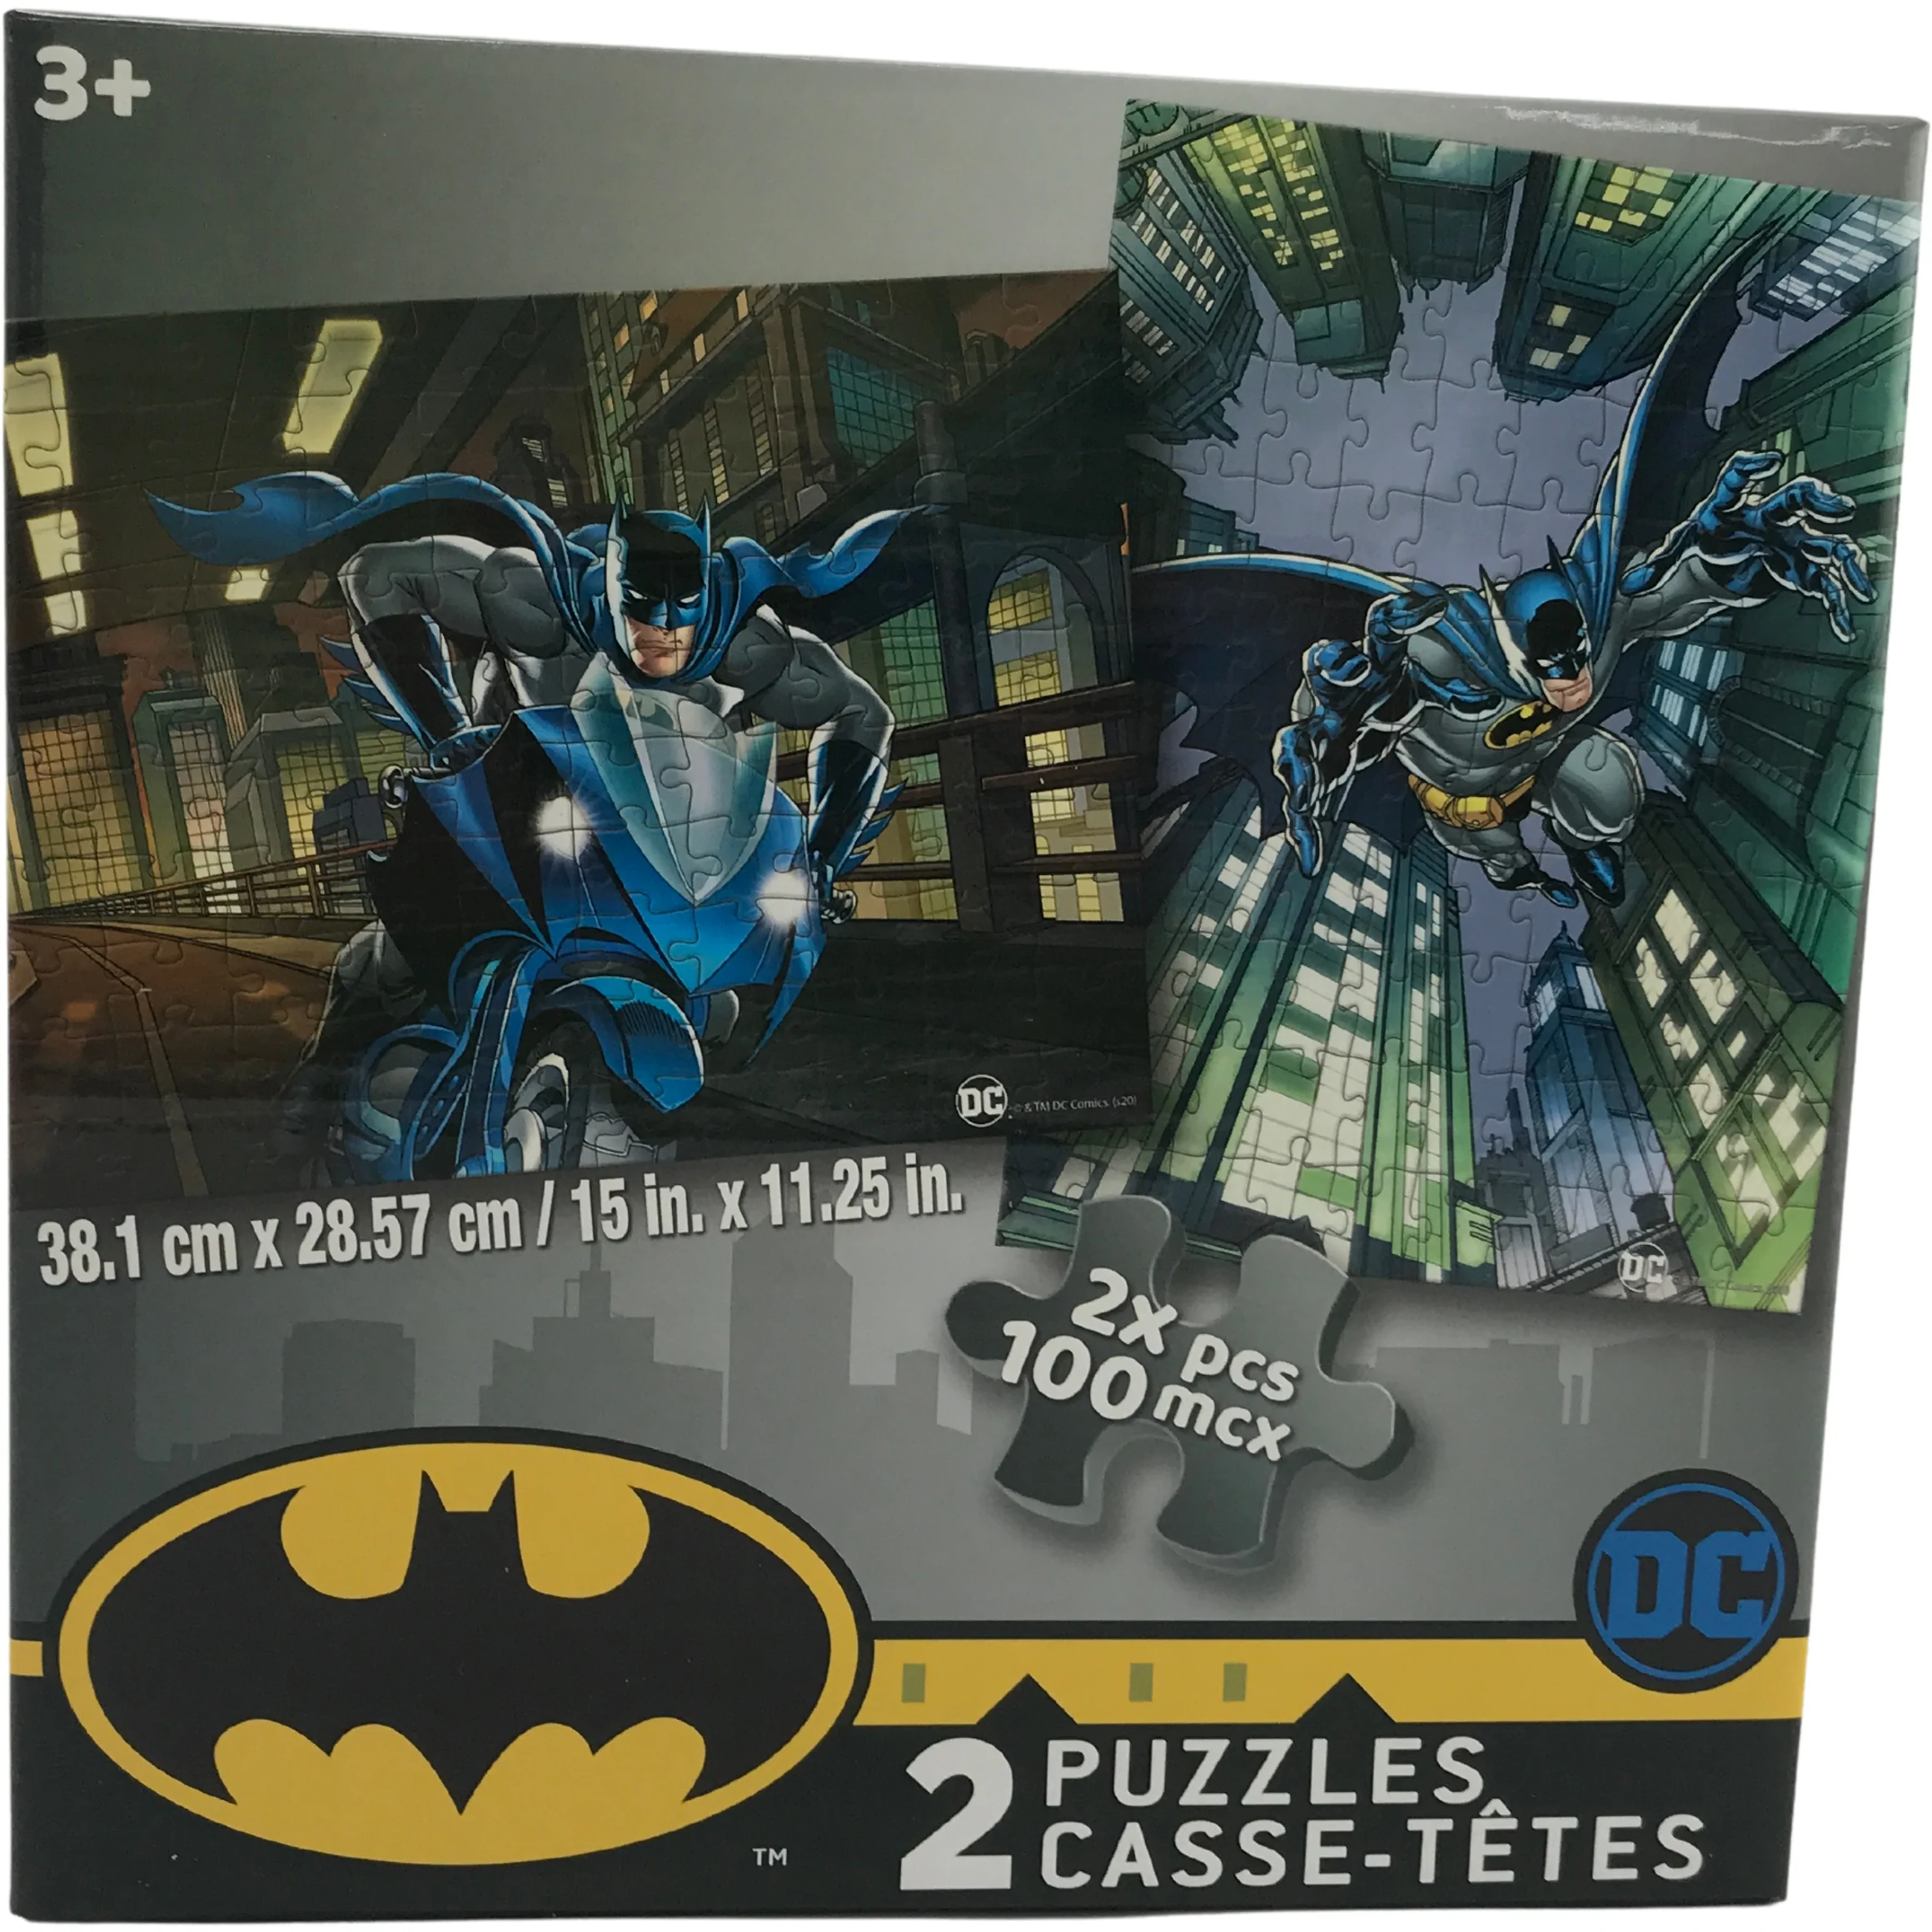 DC Batman Puzzles / 2 Puzzles / 100 Pieces / Children's Puzzles /